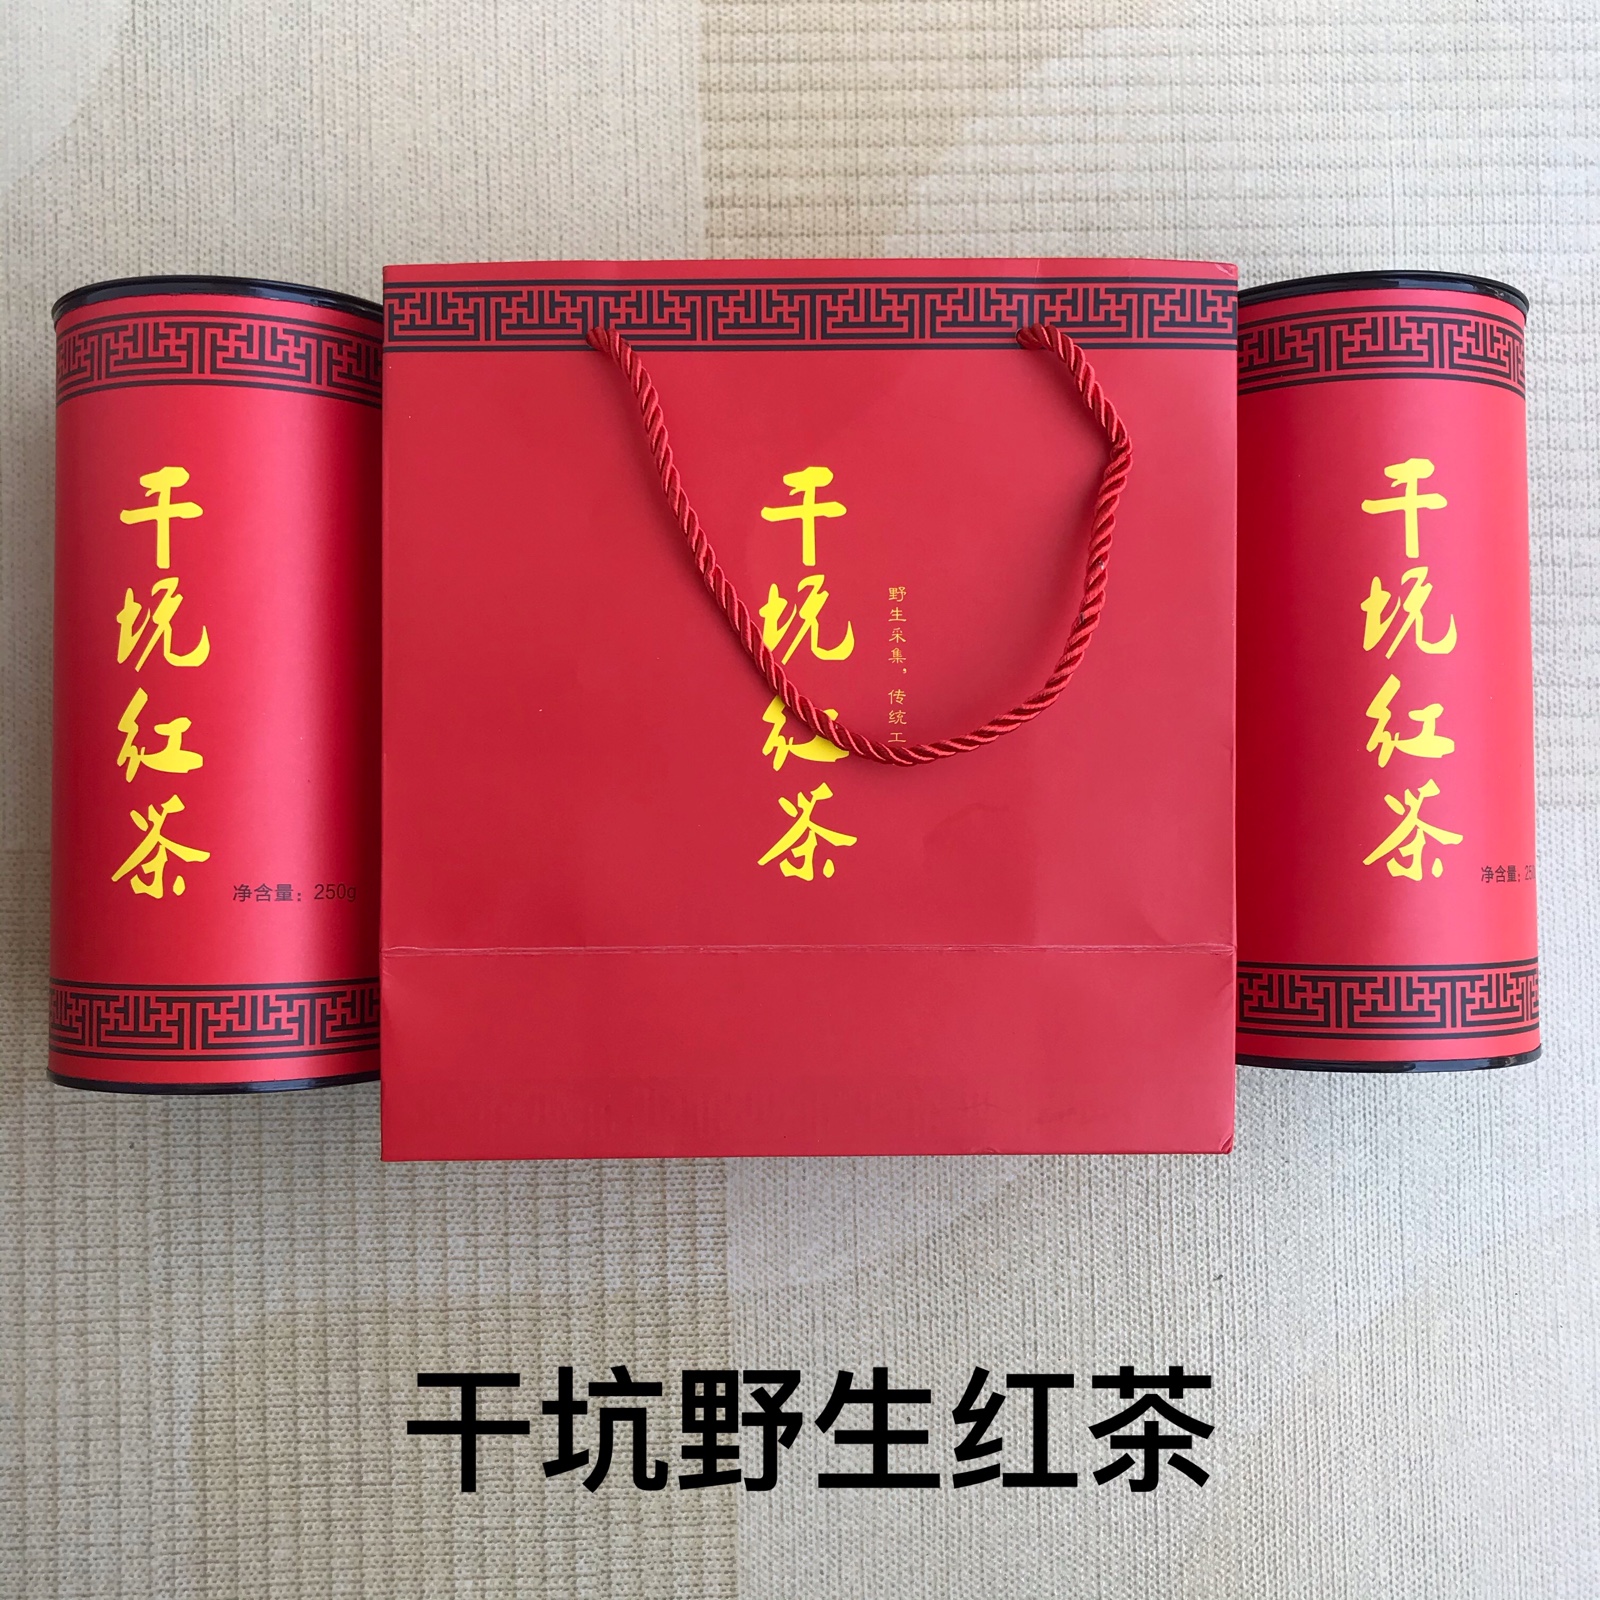 干坑红茶 正宗光泽县司前乡野生小种红茶 400克罐装 茶农直销